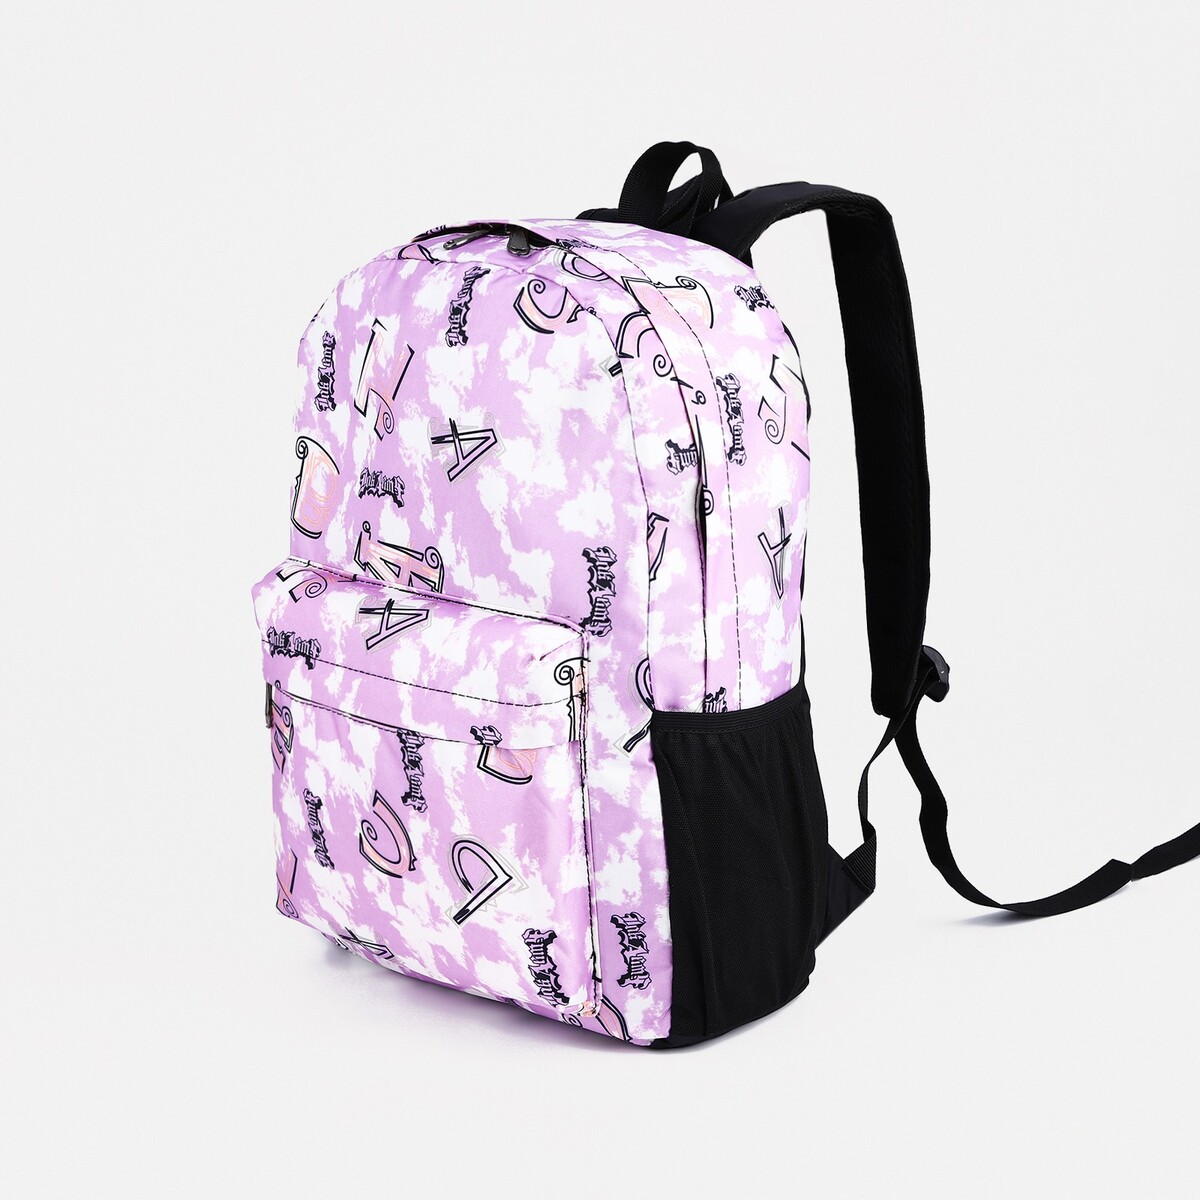 Рюкзак школьный из текстиля на молнии, 3 кармана, цвет фиолетовый рюкзак детский на молнии 3 наружных кармана фиолетовый